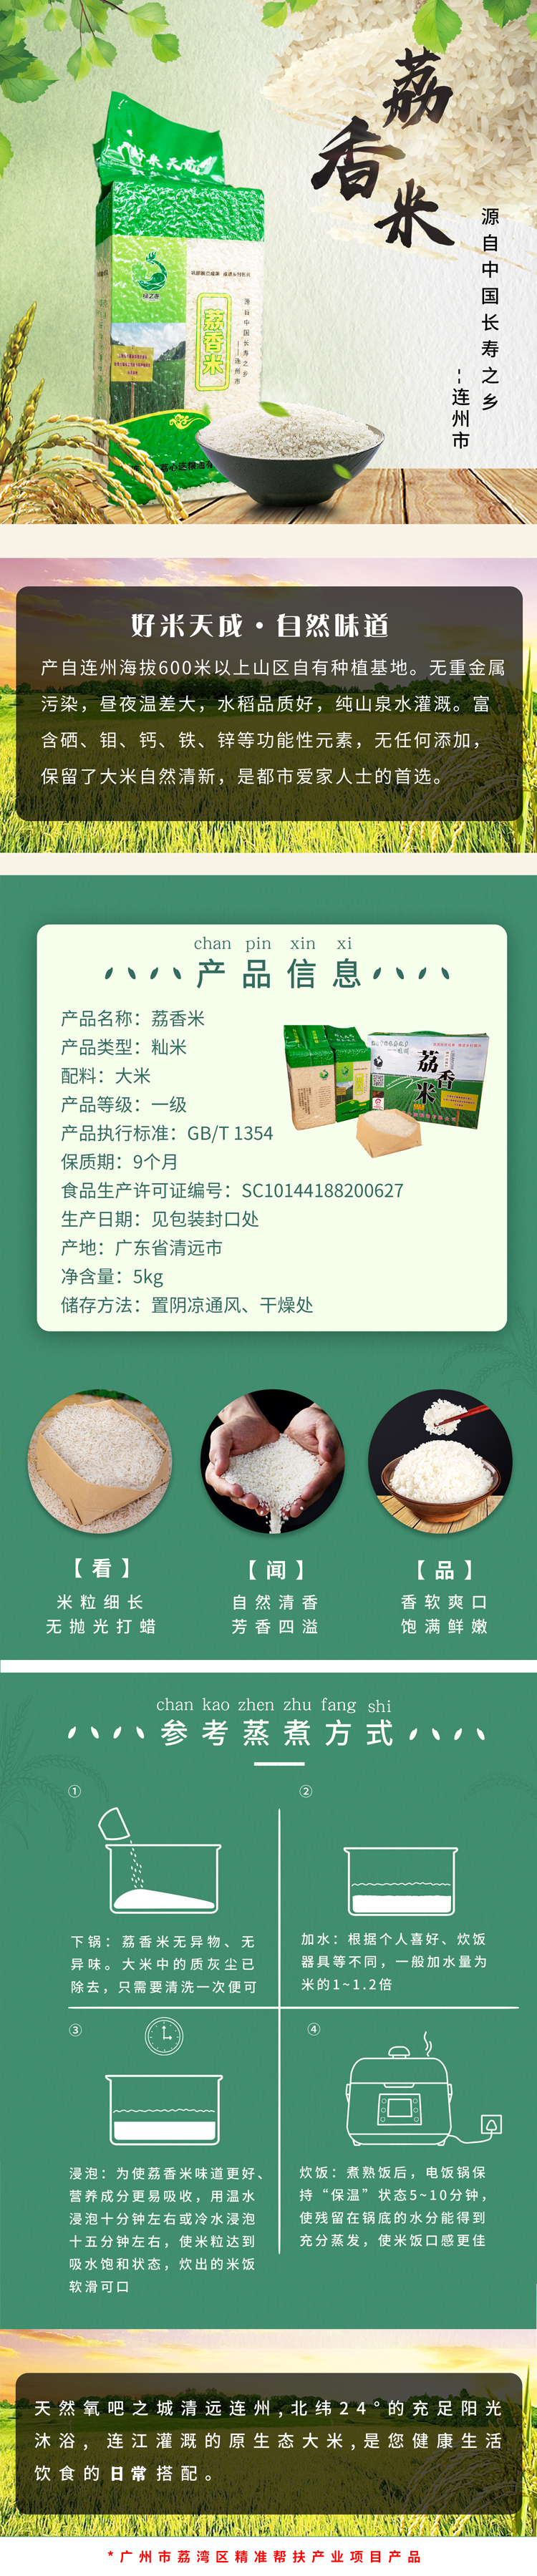 http://b2bwings-goods-image.oss-cn-shenzhen.aliyuncs.com/c6a03362-6692-48f2-89d8-53631fd8b4e3.png